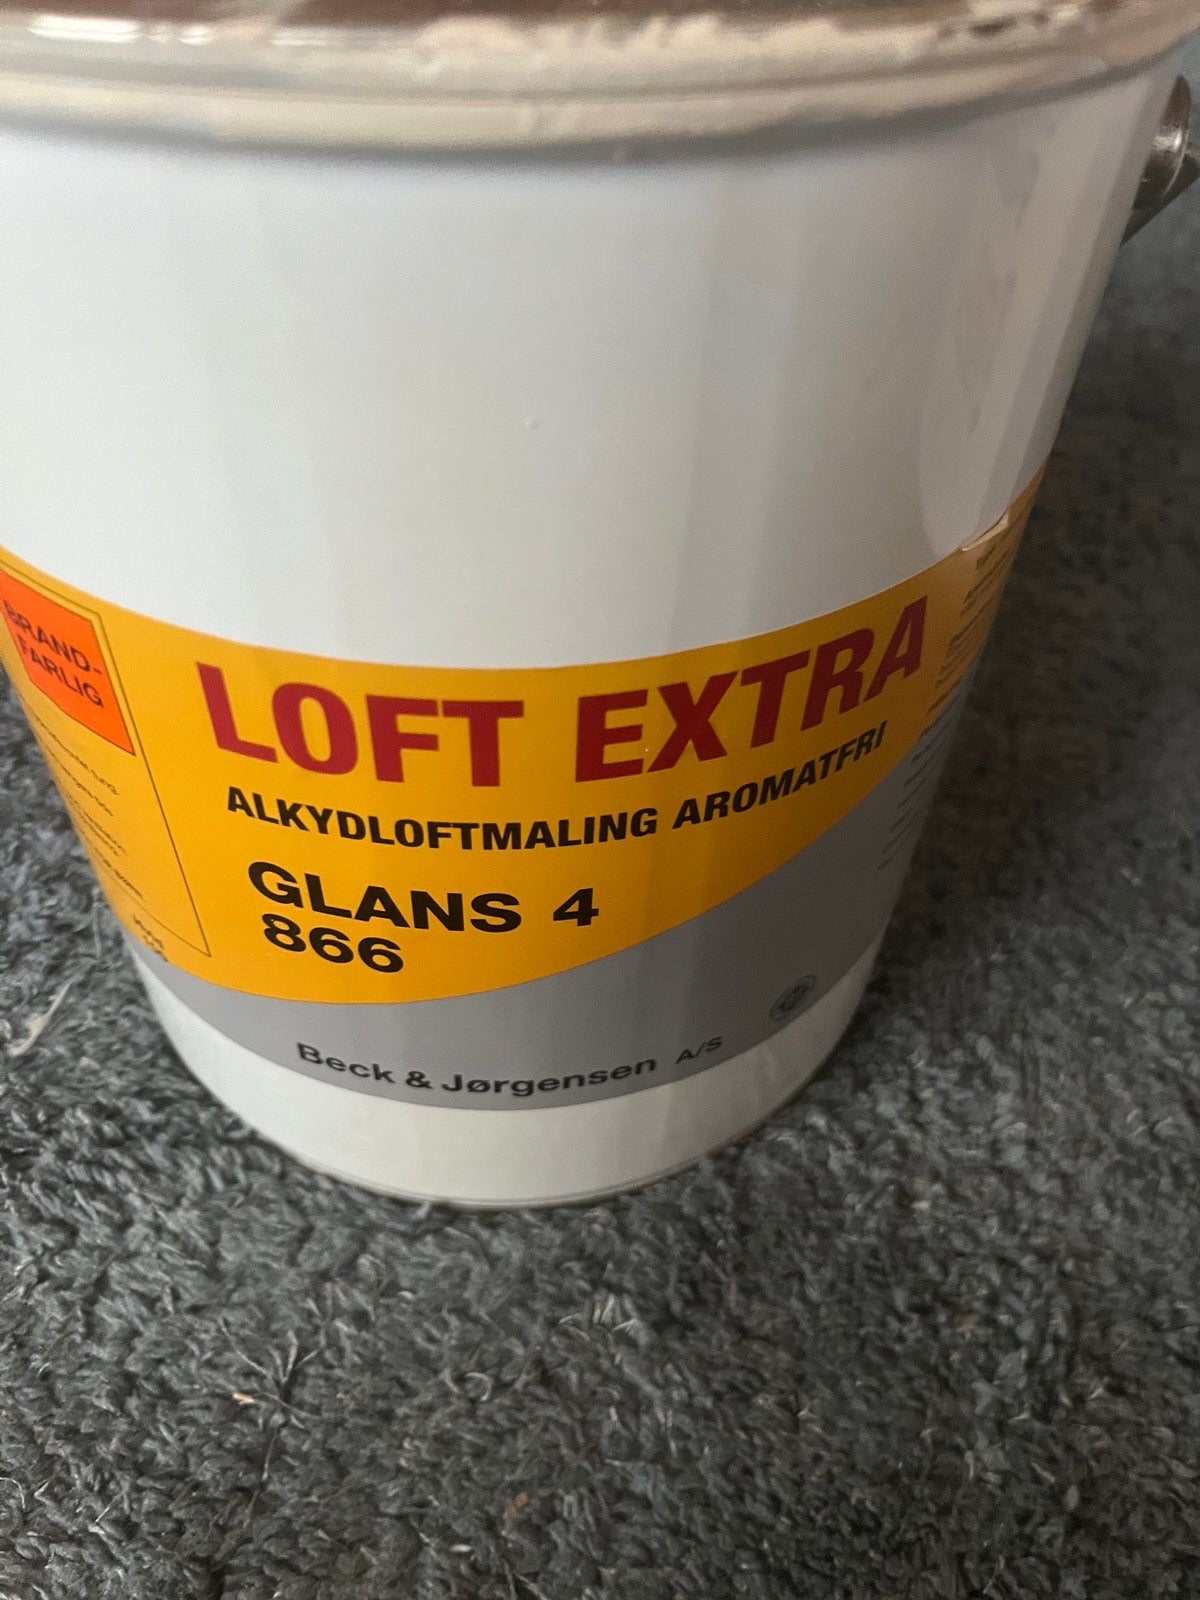 Loft Extra Alkyldloftsmaling Aromafri, Beck & Jørgensen